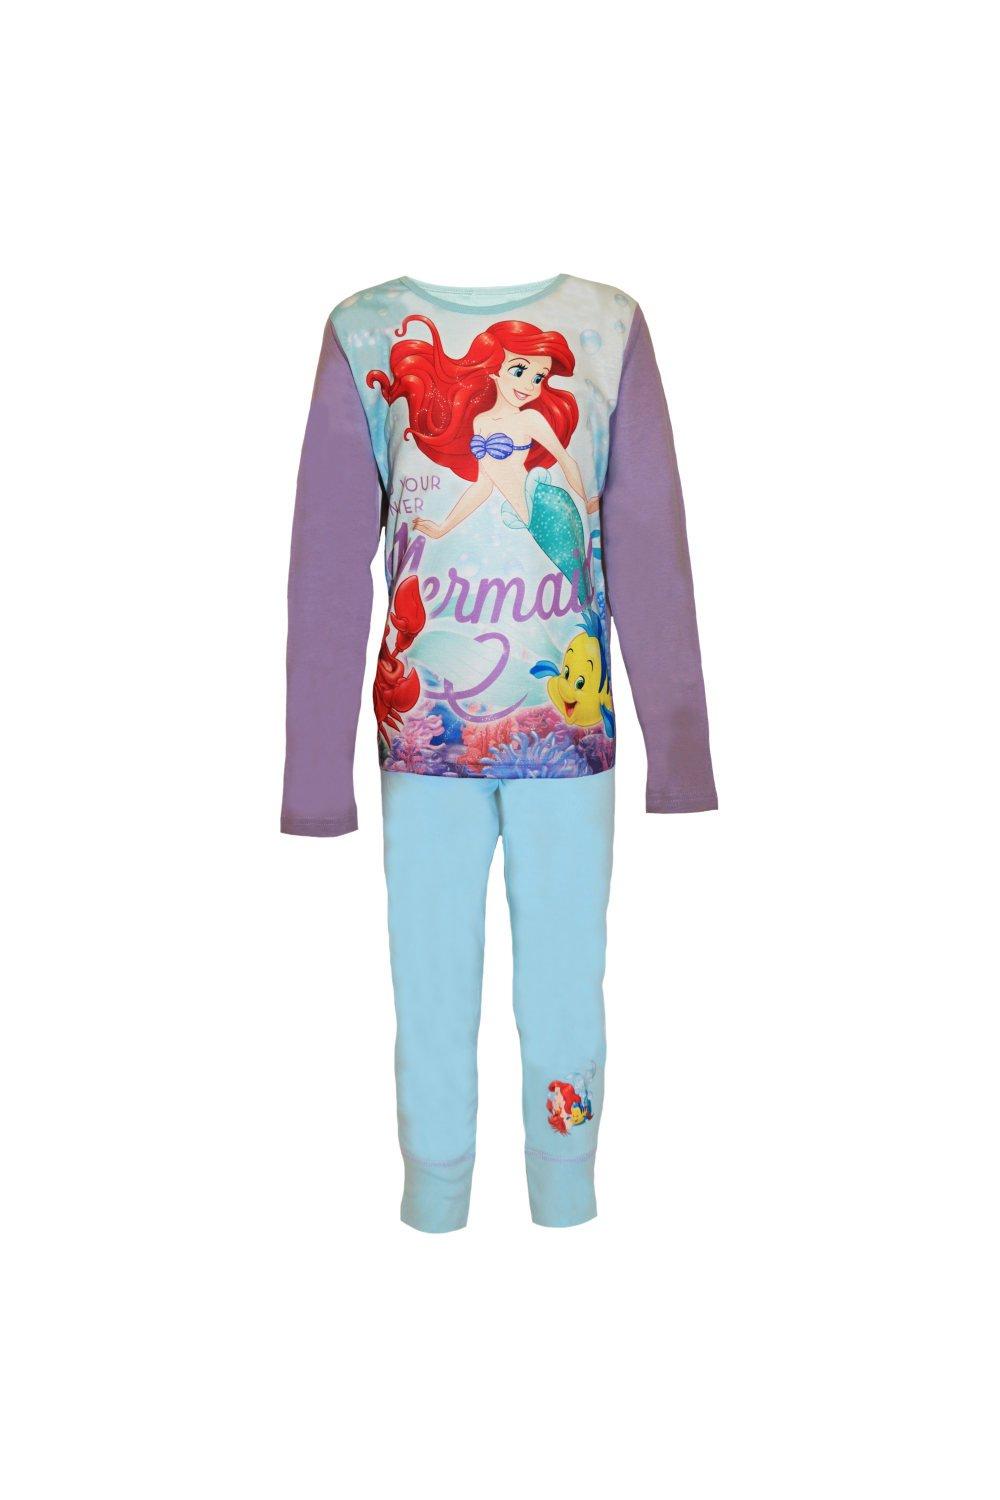 Little Mermaid Pyjamas